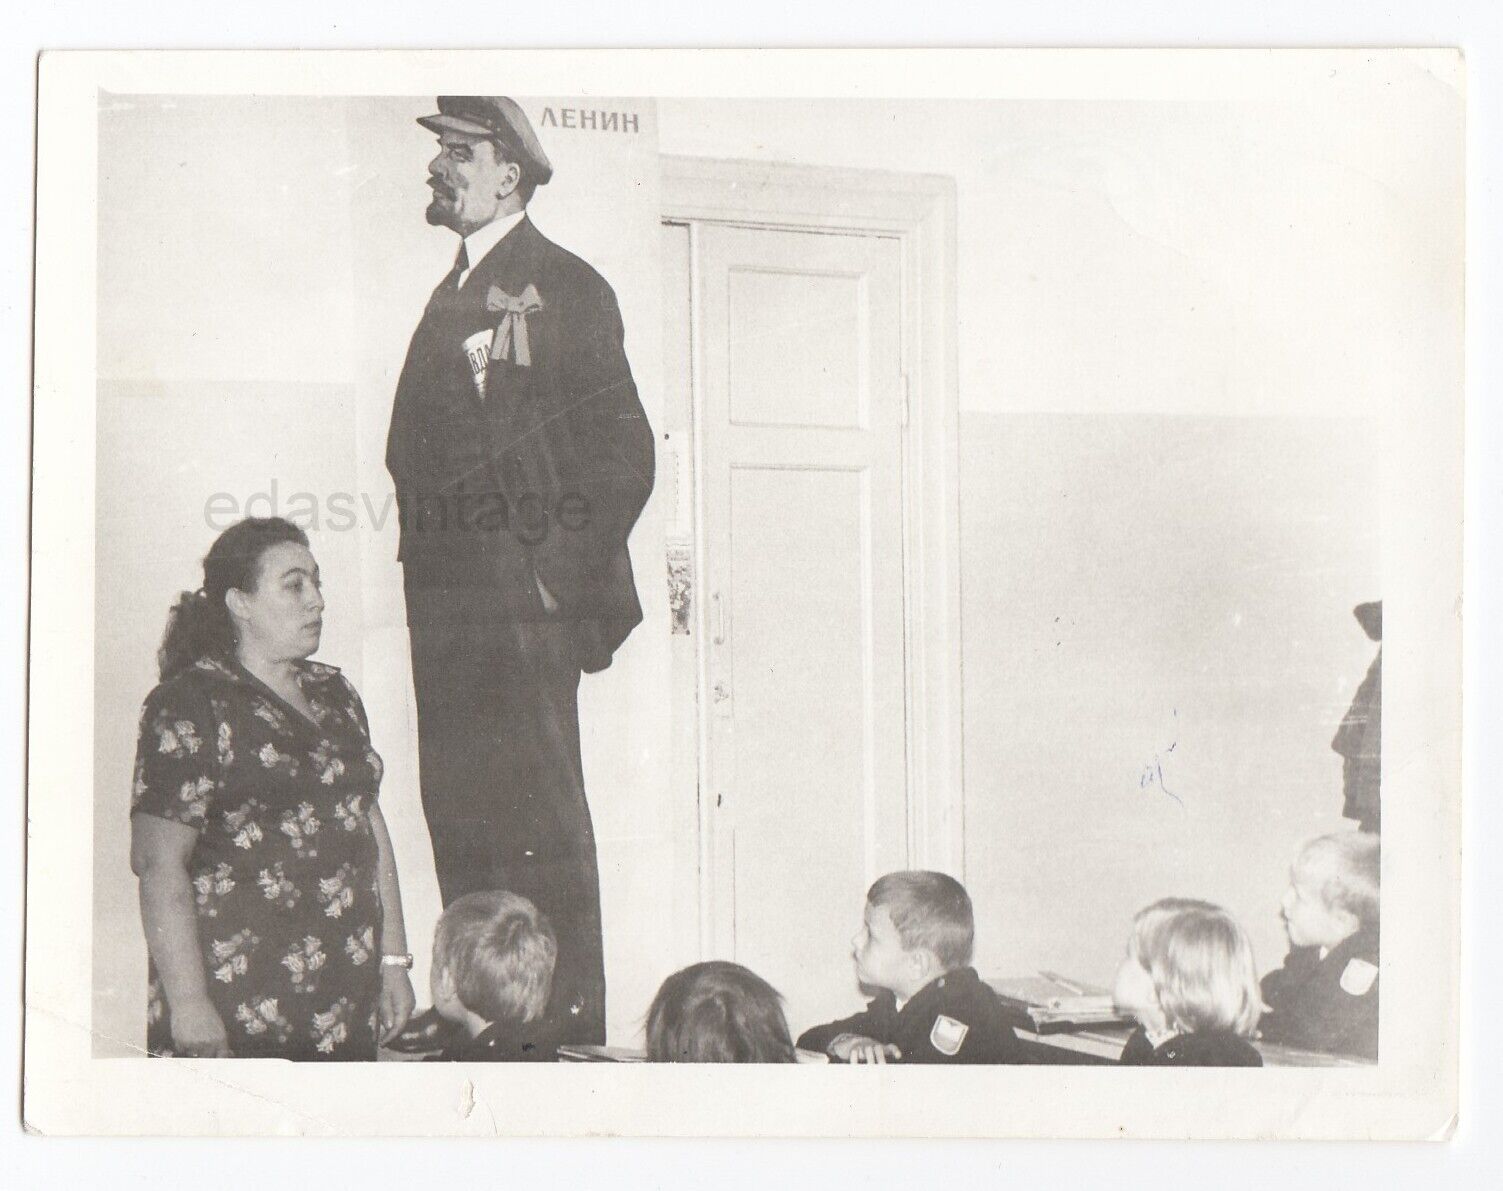 V. Lenin First day School USSR Surreal unusual weird odd vintage photo Error